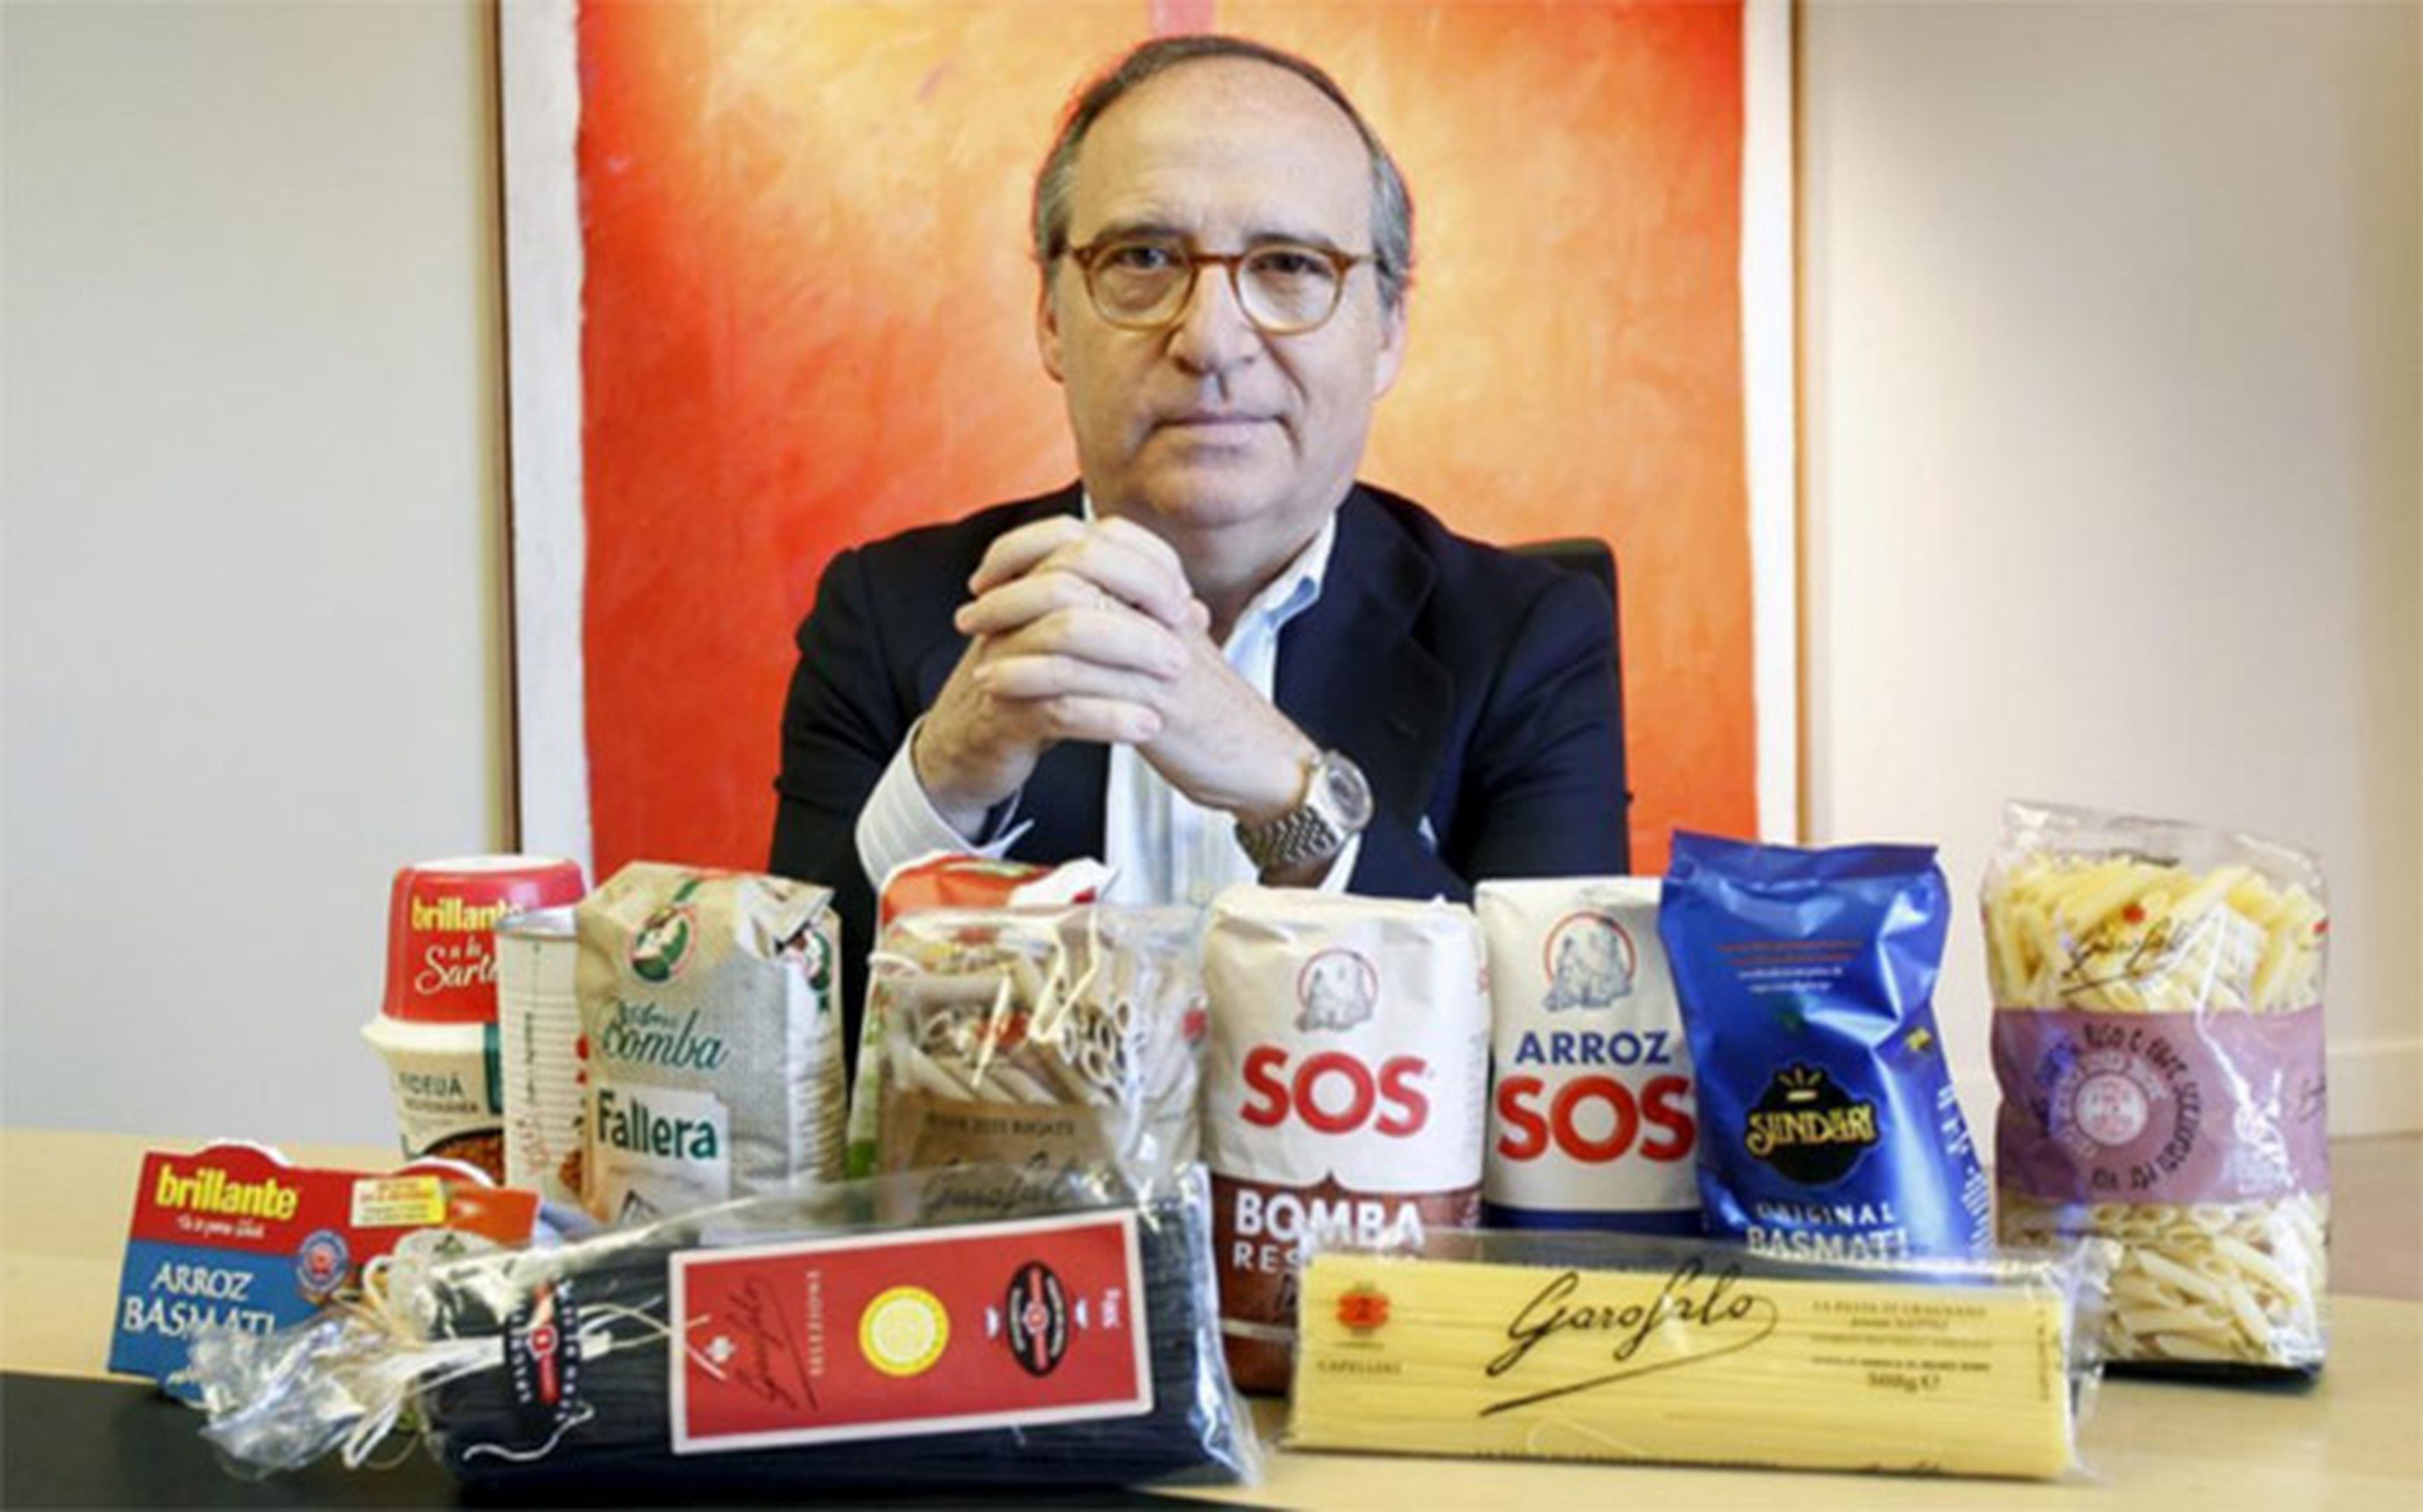 Antonio Hernández Callejas, presidente de Ebro Foods